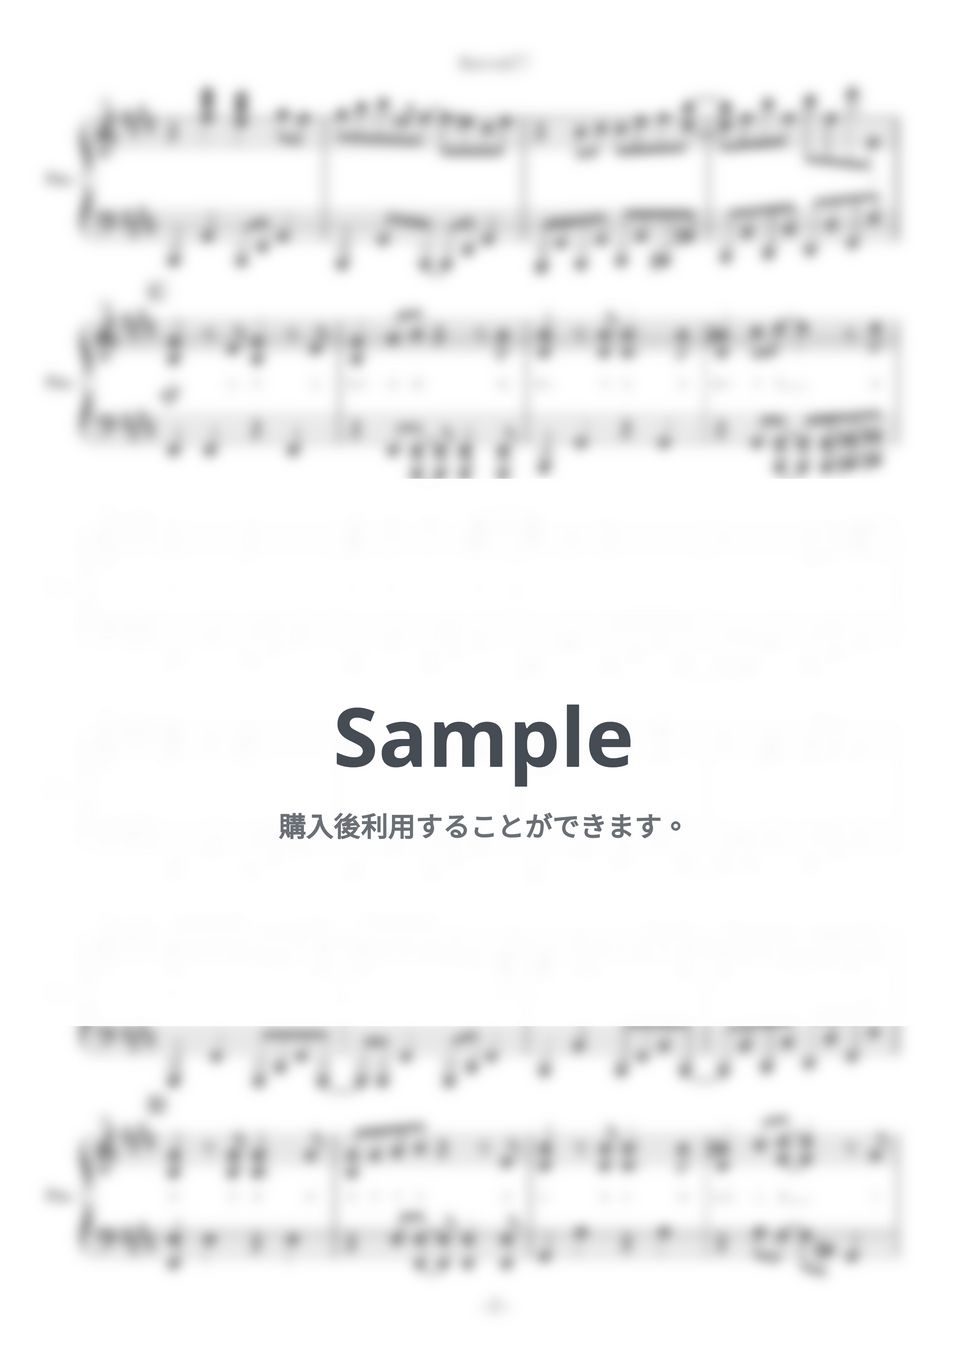 にじさんじ - Hurrah！！ (ピアノ楽譜/作詞作曲：じん) by yoshi